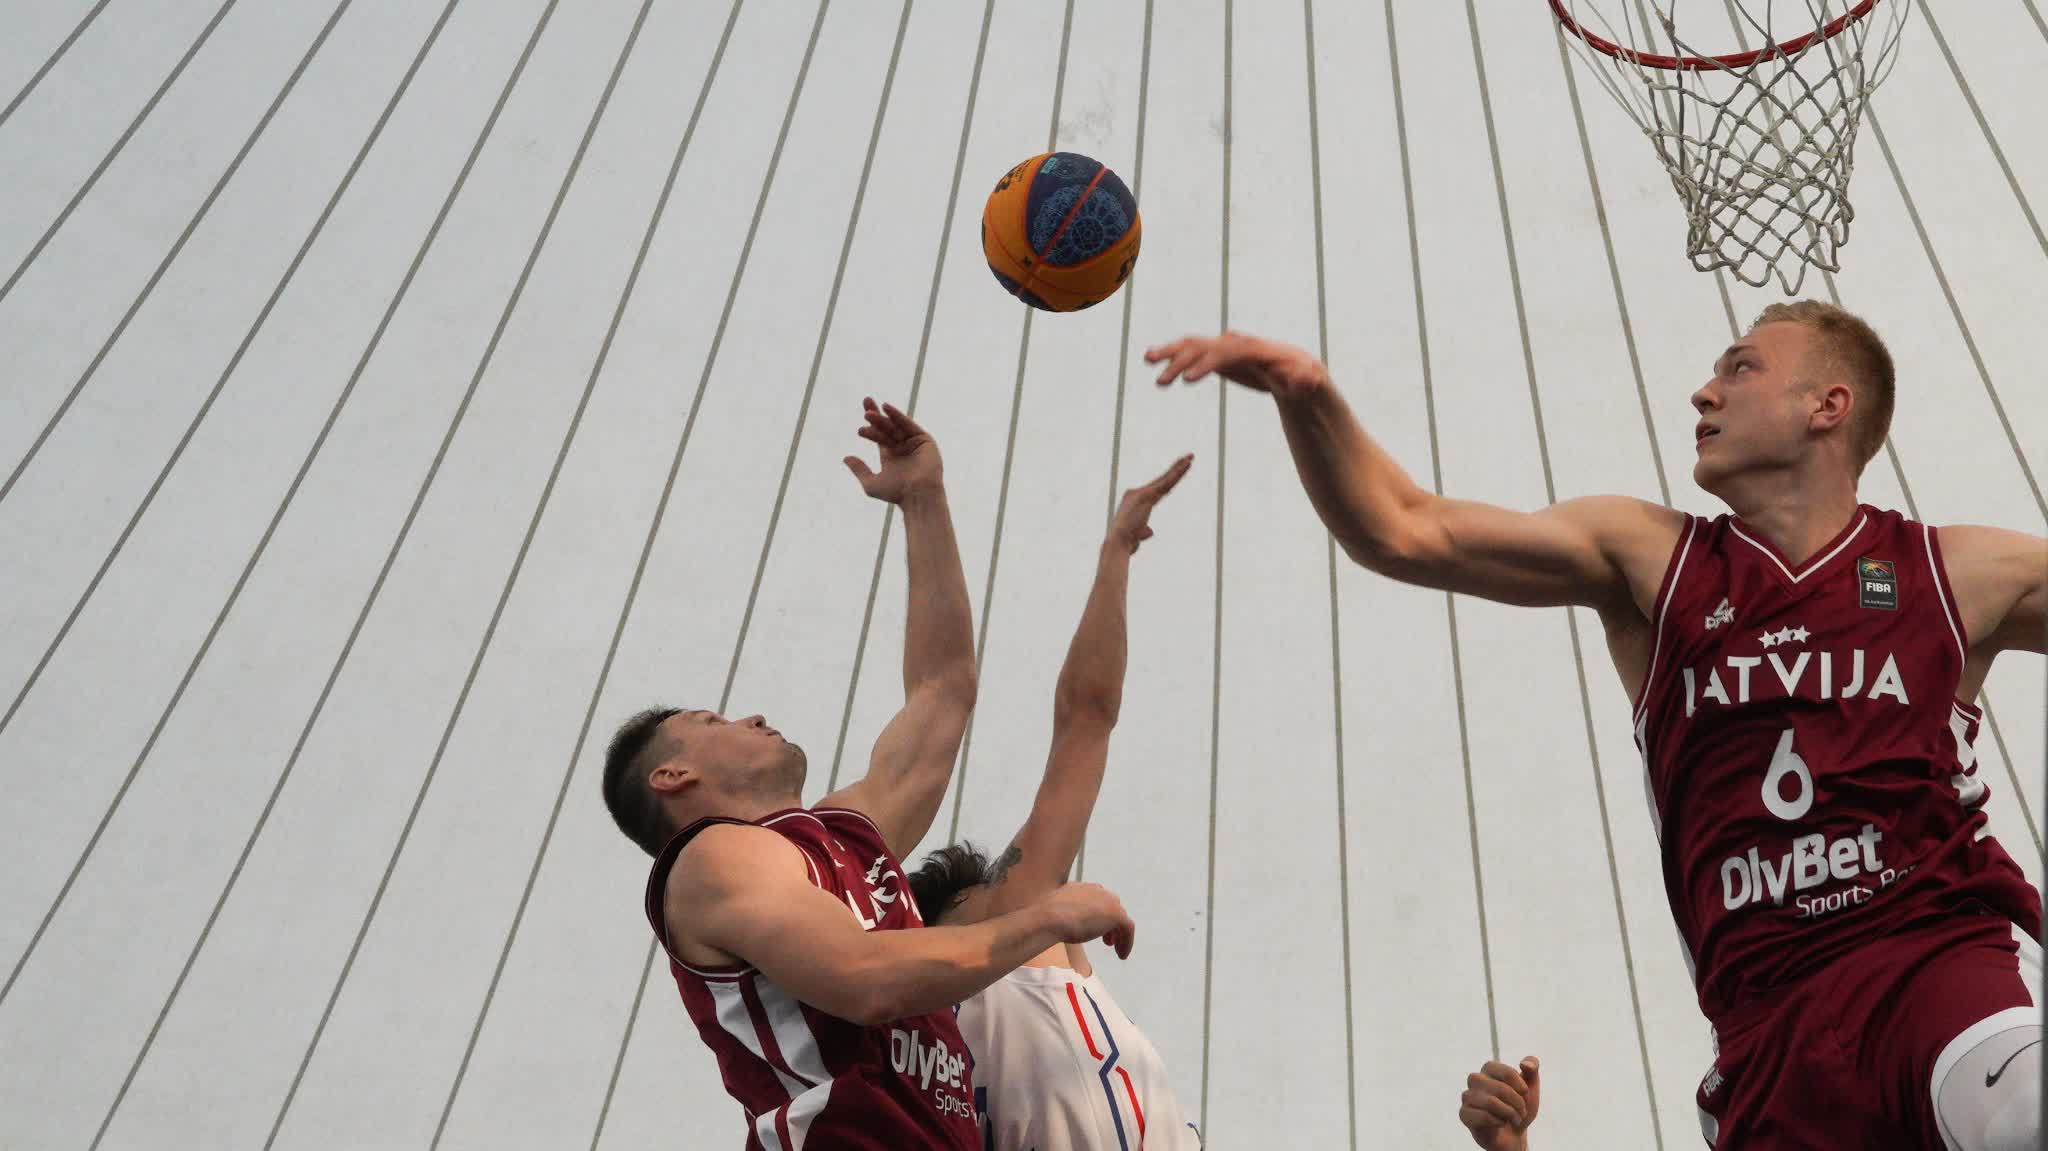 Photos | FIBA 3x3 qualifiers held in HK over weekend